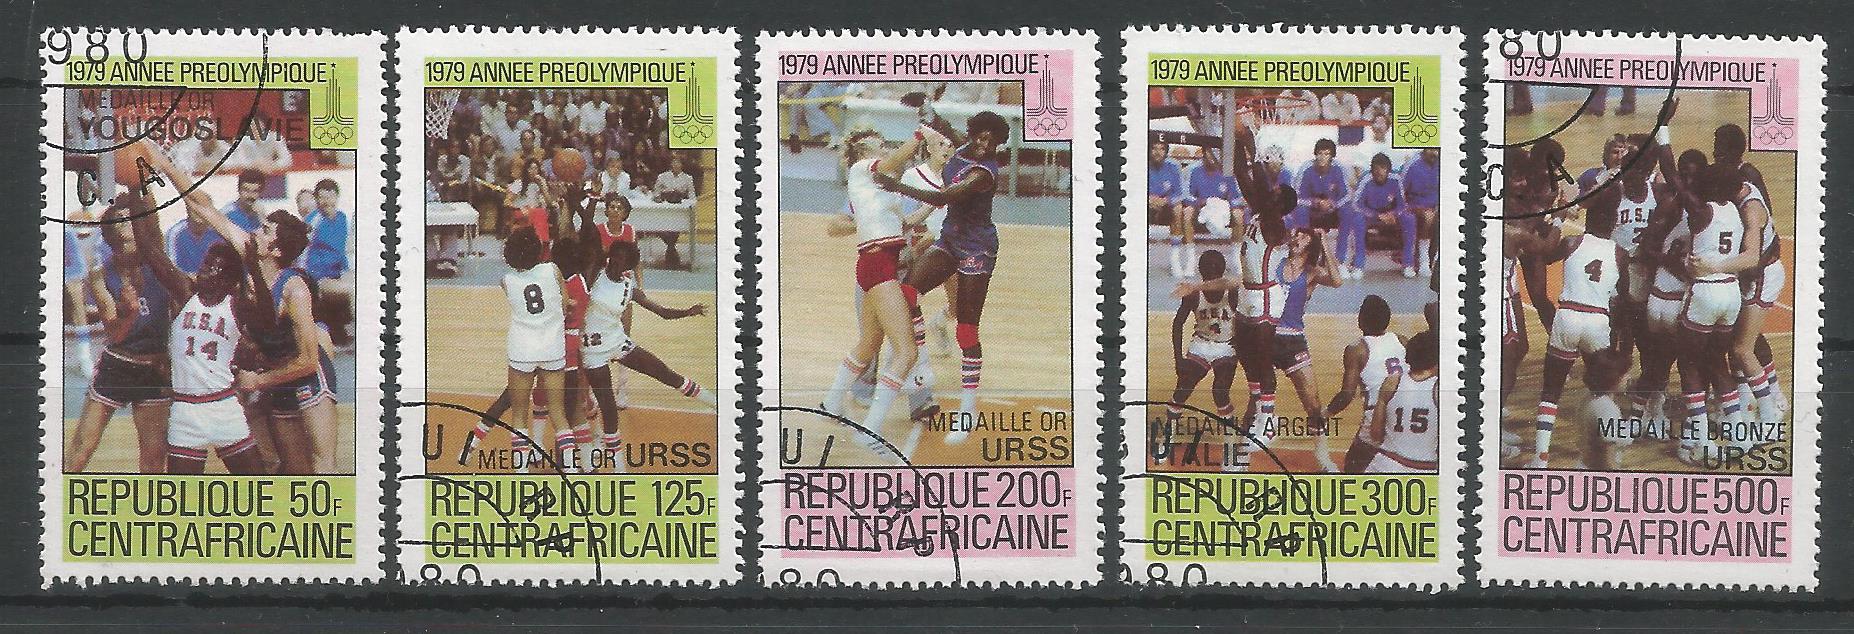 51901 - REPUBBLICA CENTRAFRICANA - 1979 - Anno Pre-Olimpico - 5 val. cpl timbrati - Michel : 653/657 - Yvert : 404/408 - [RCF003]